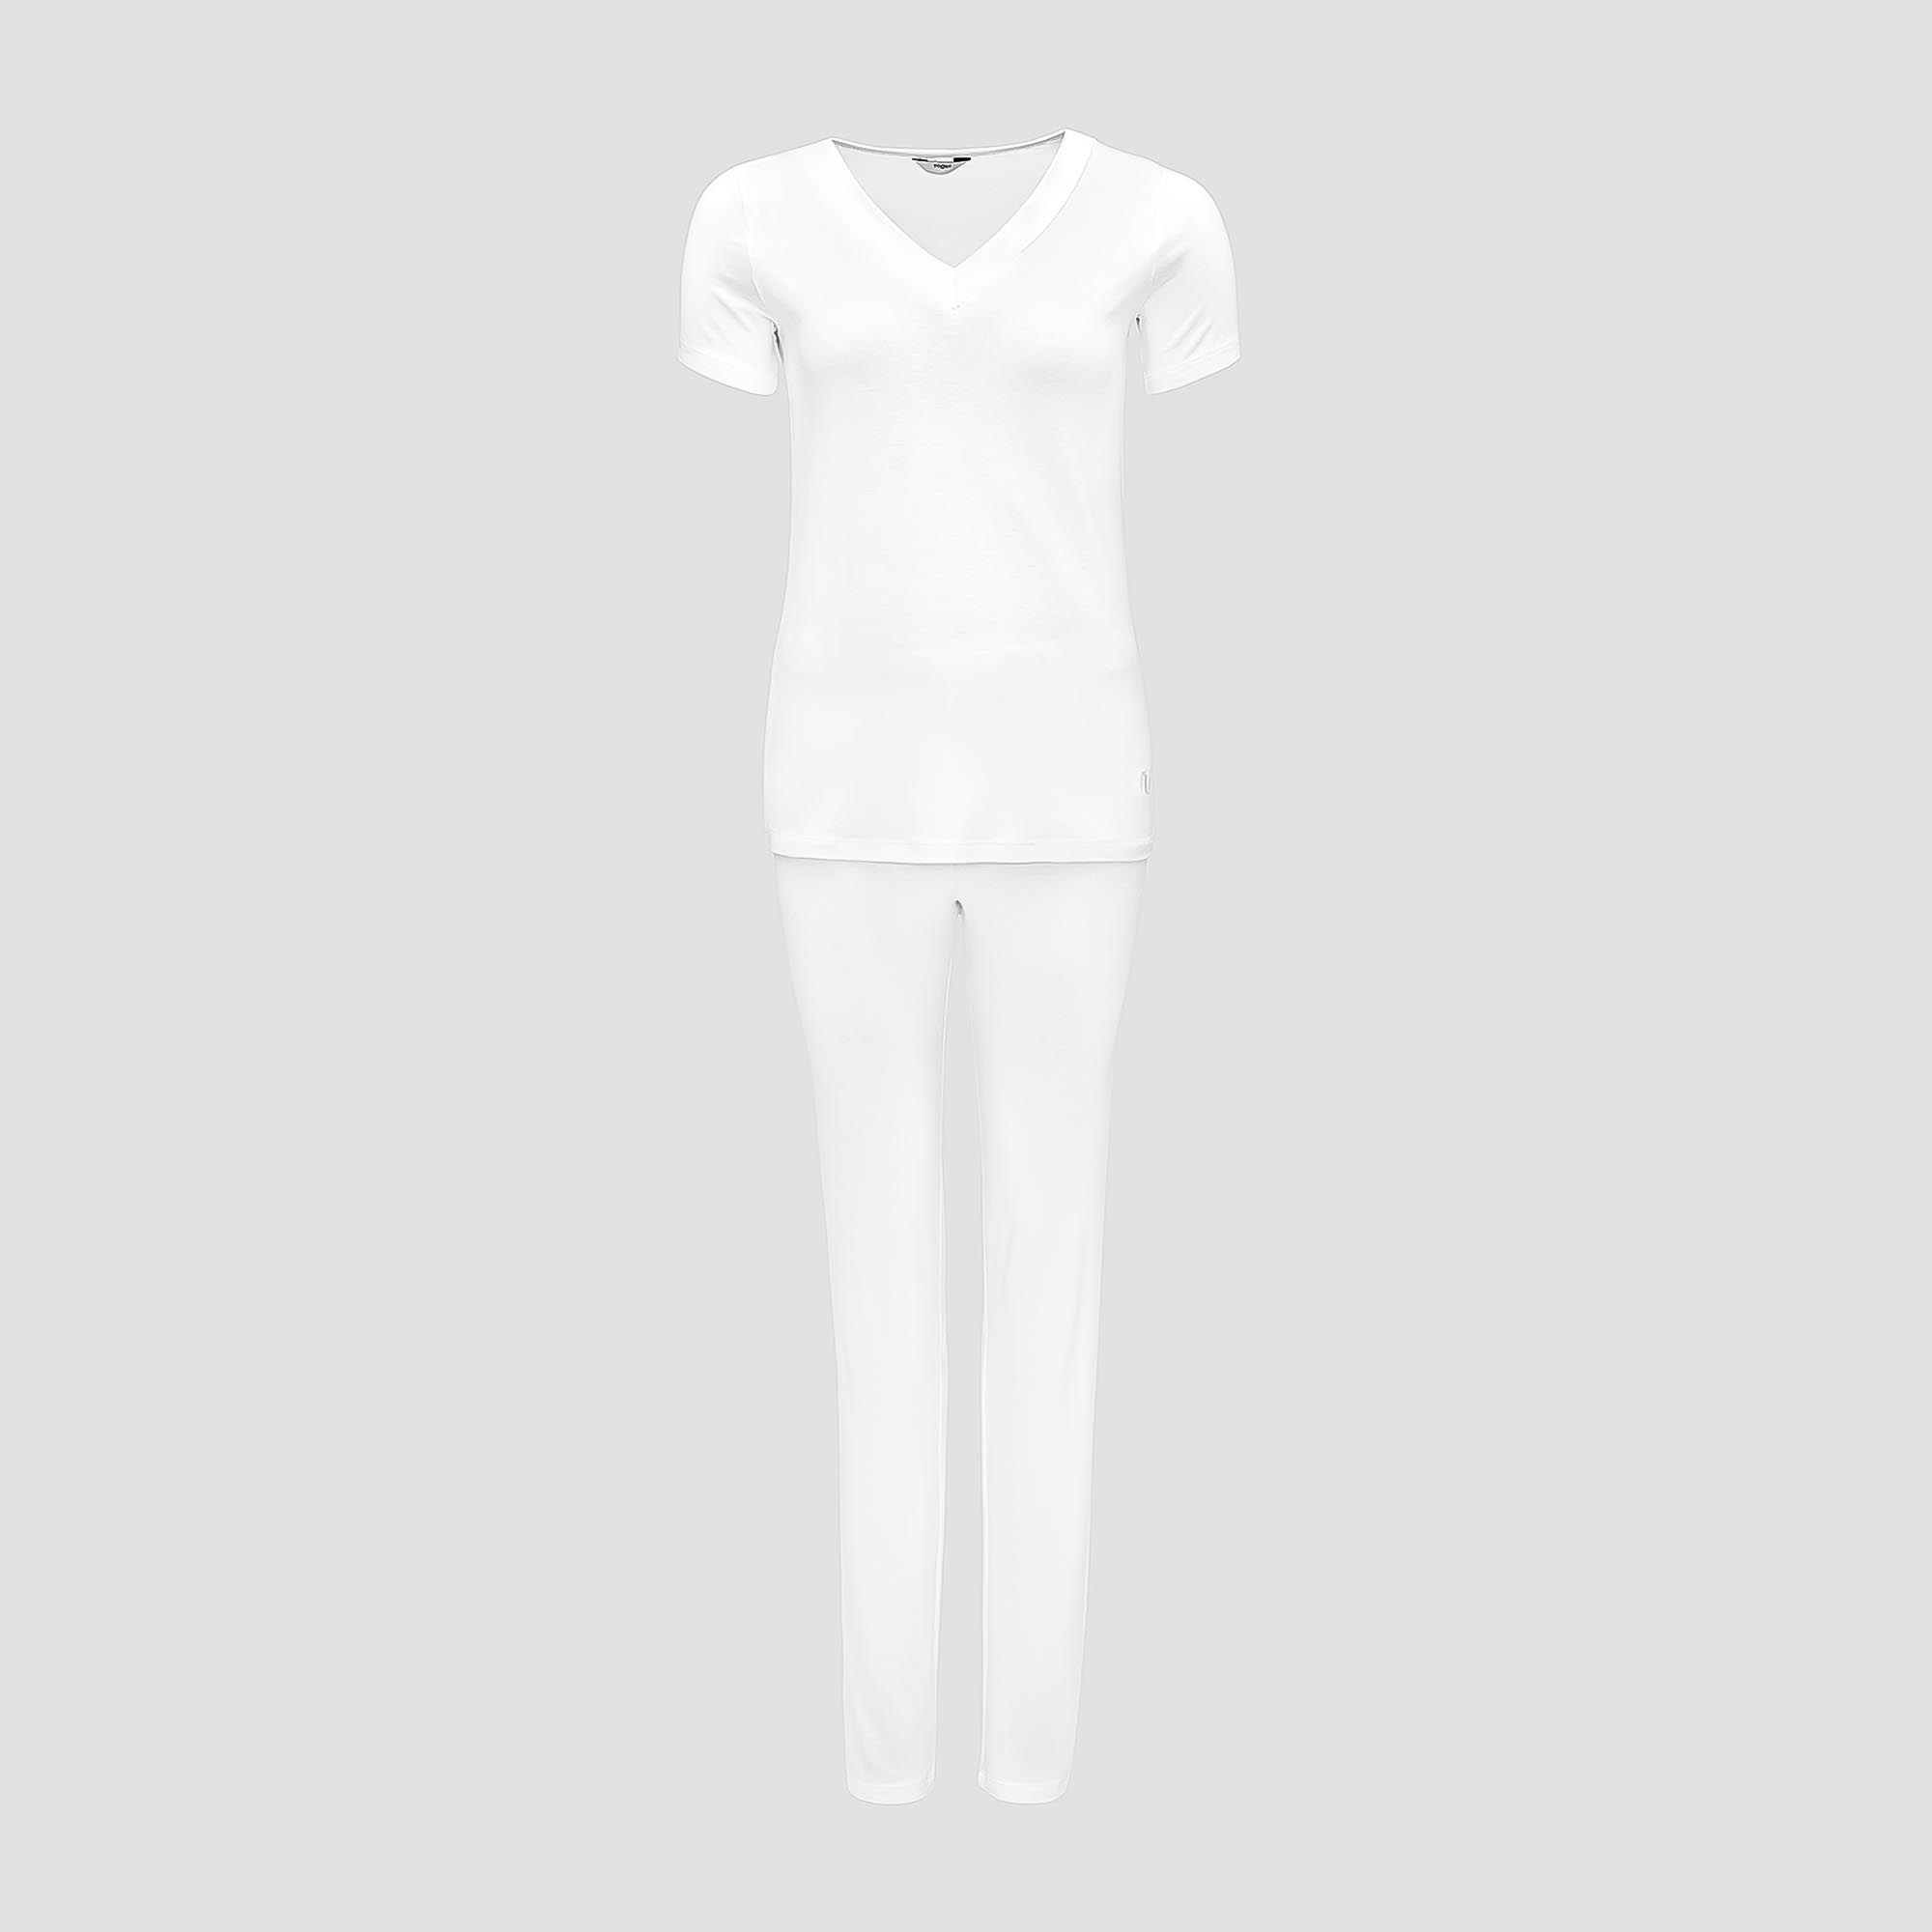 Пижама Togas Ингелла белая женская XXL(52) 2 предмета пижама джемпер брюки